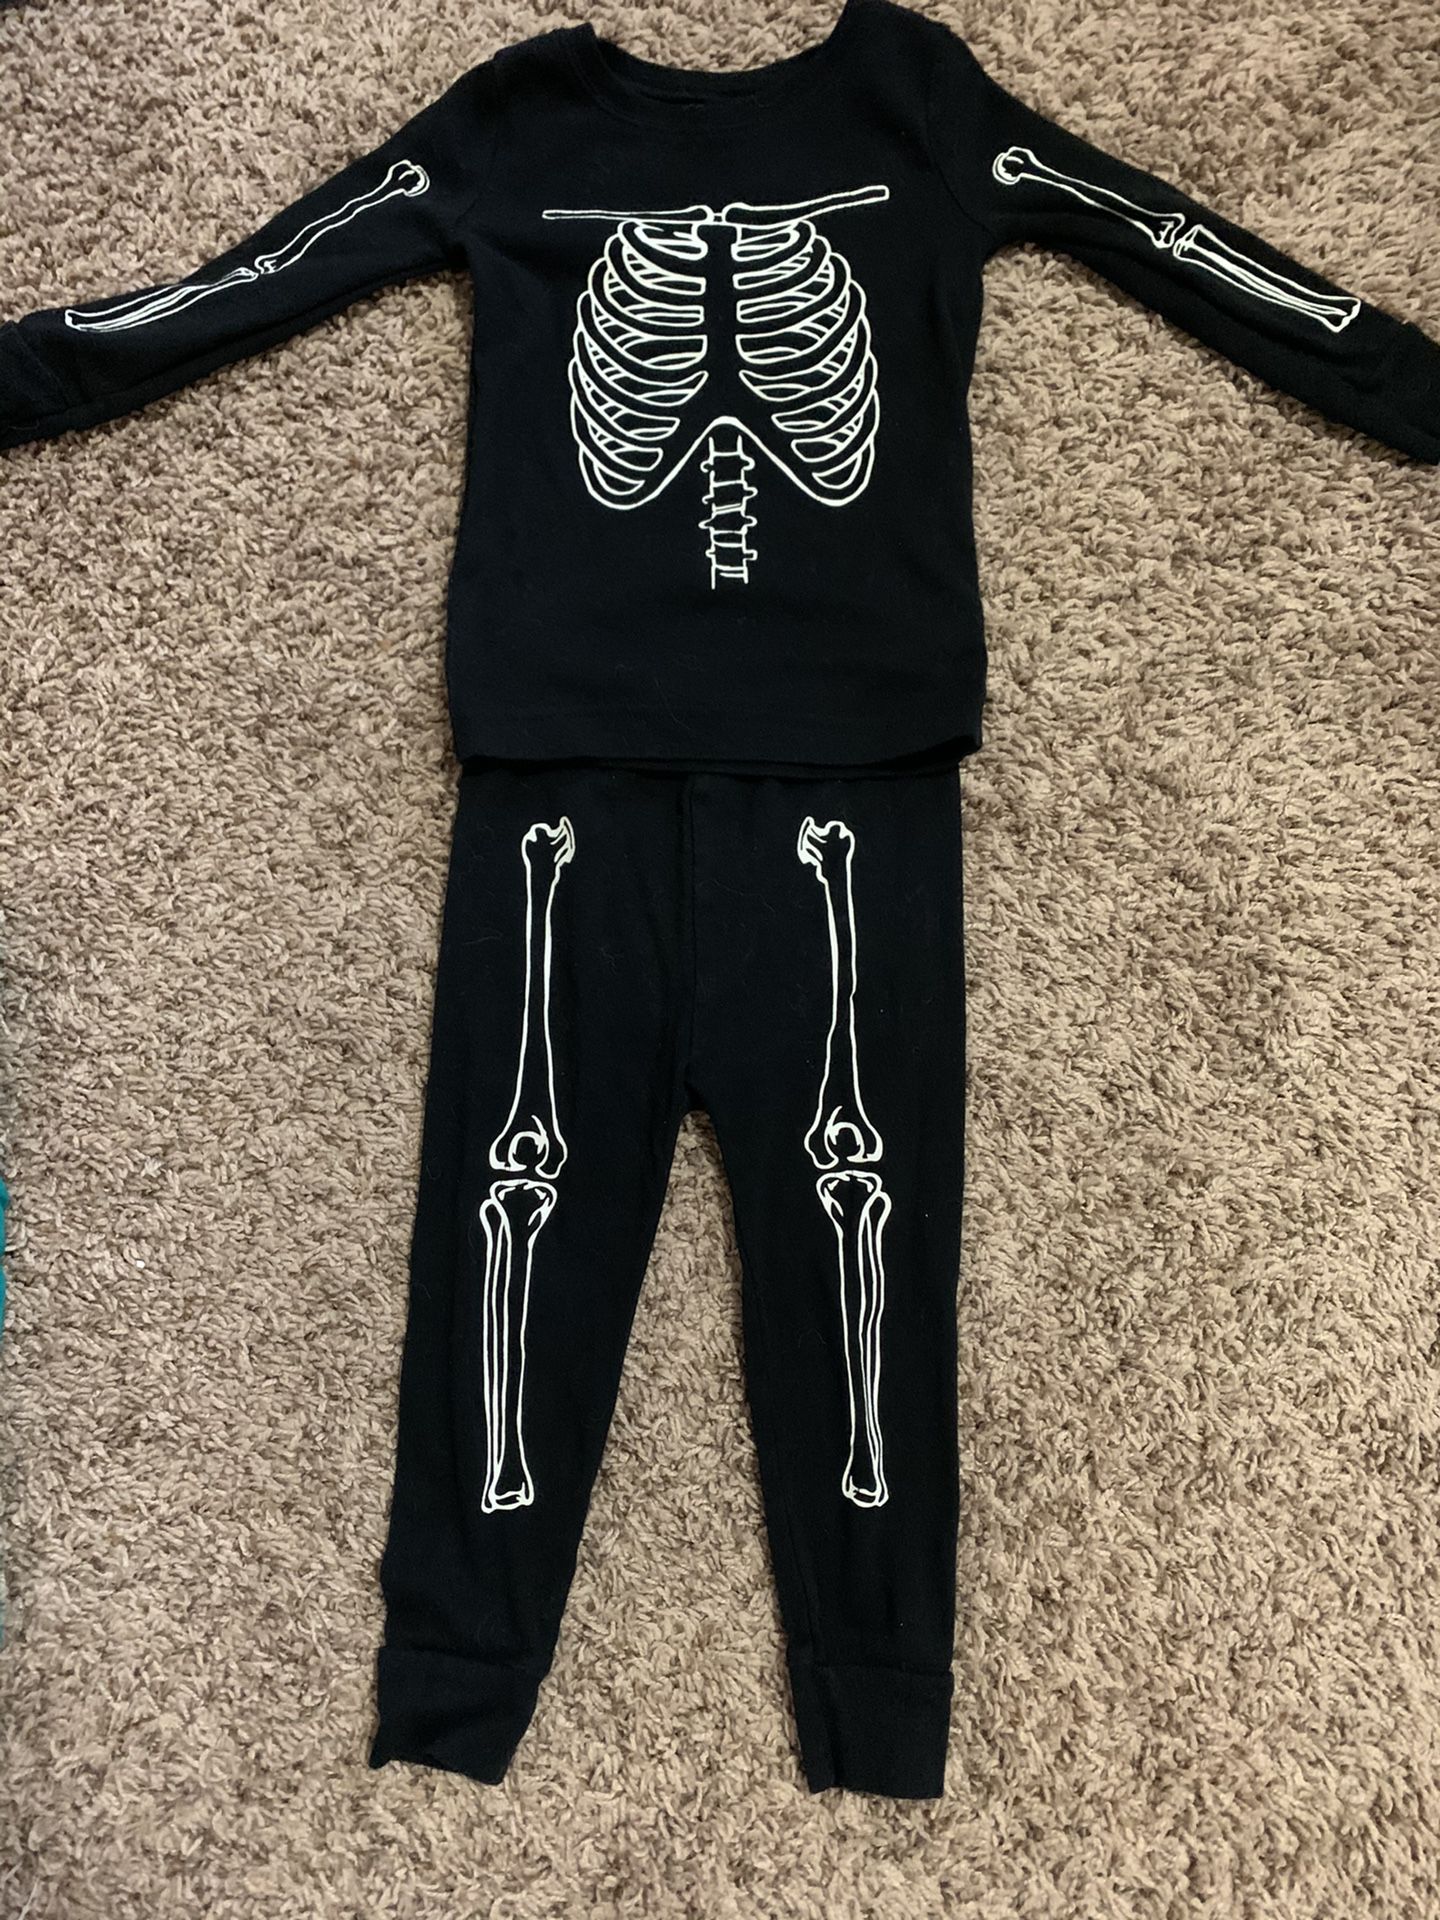 Skeleton PJ’s or costume